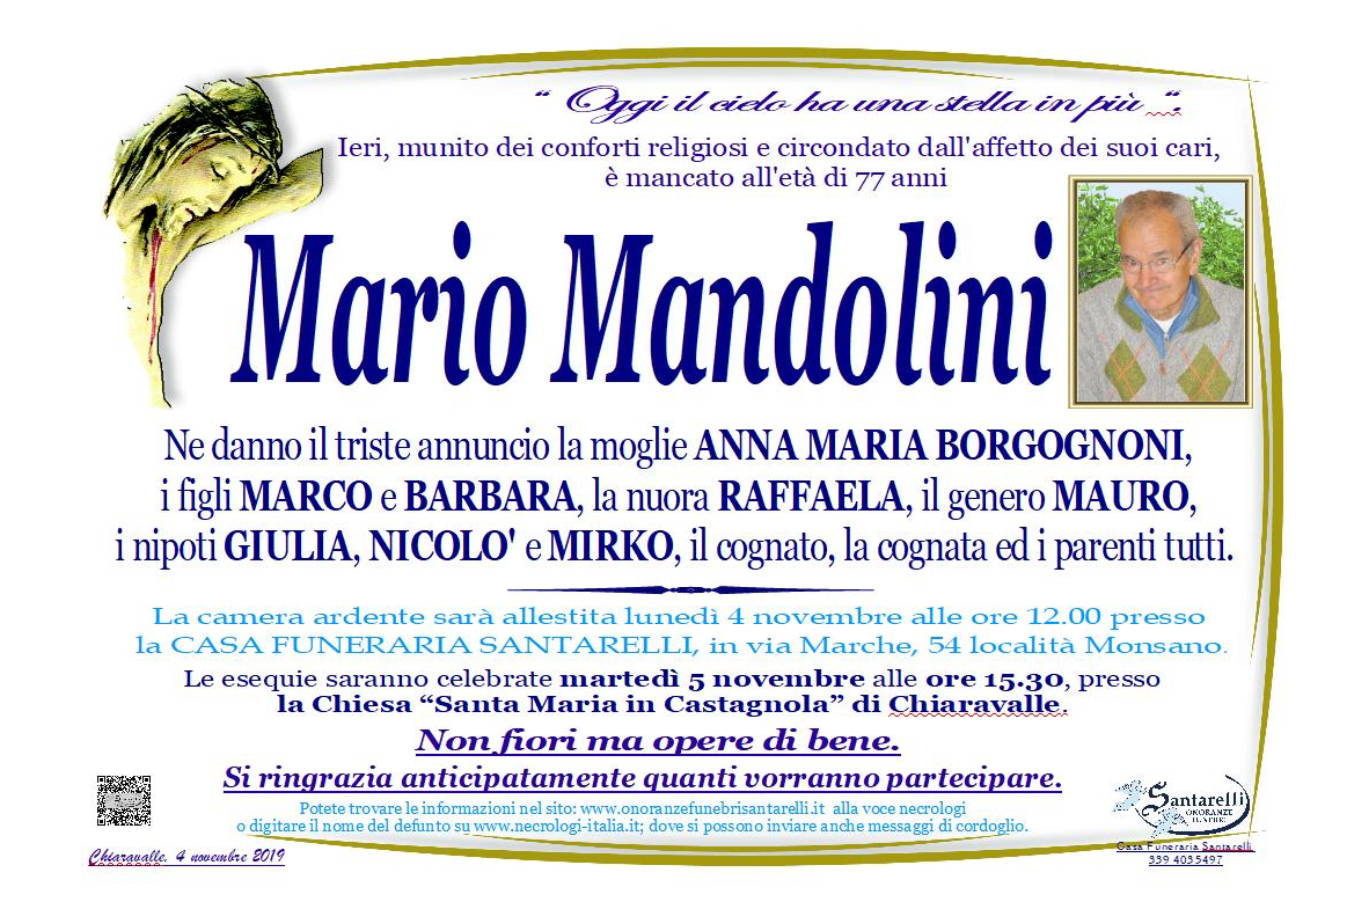 Mario Mandolini